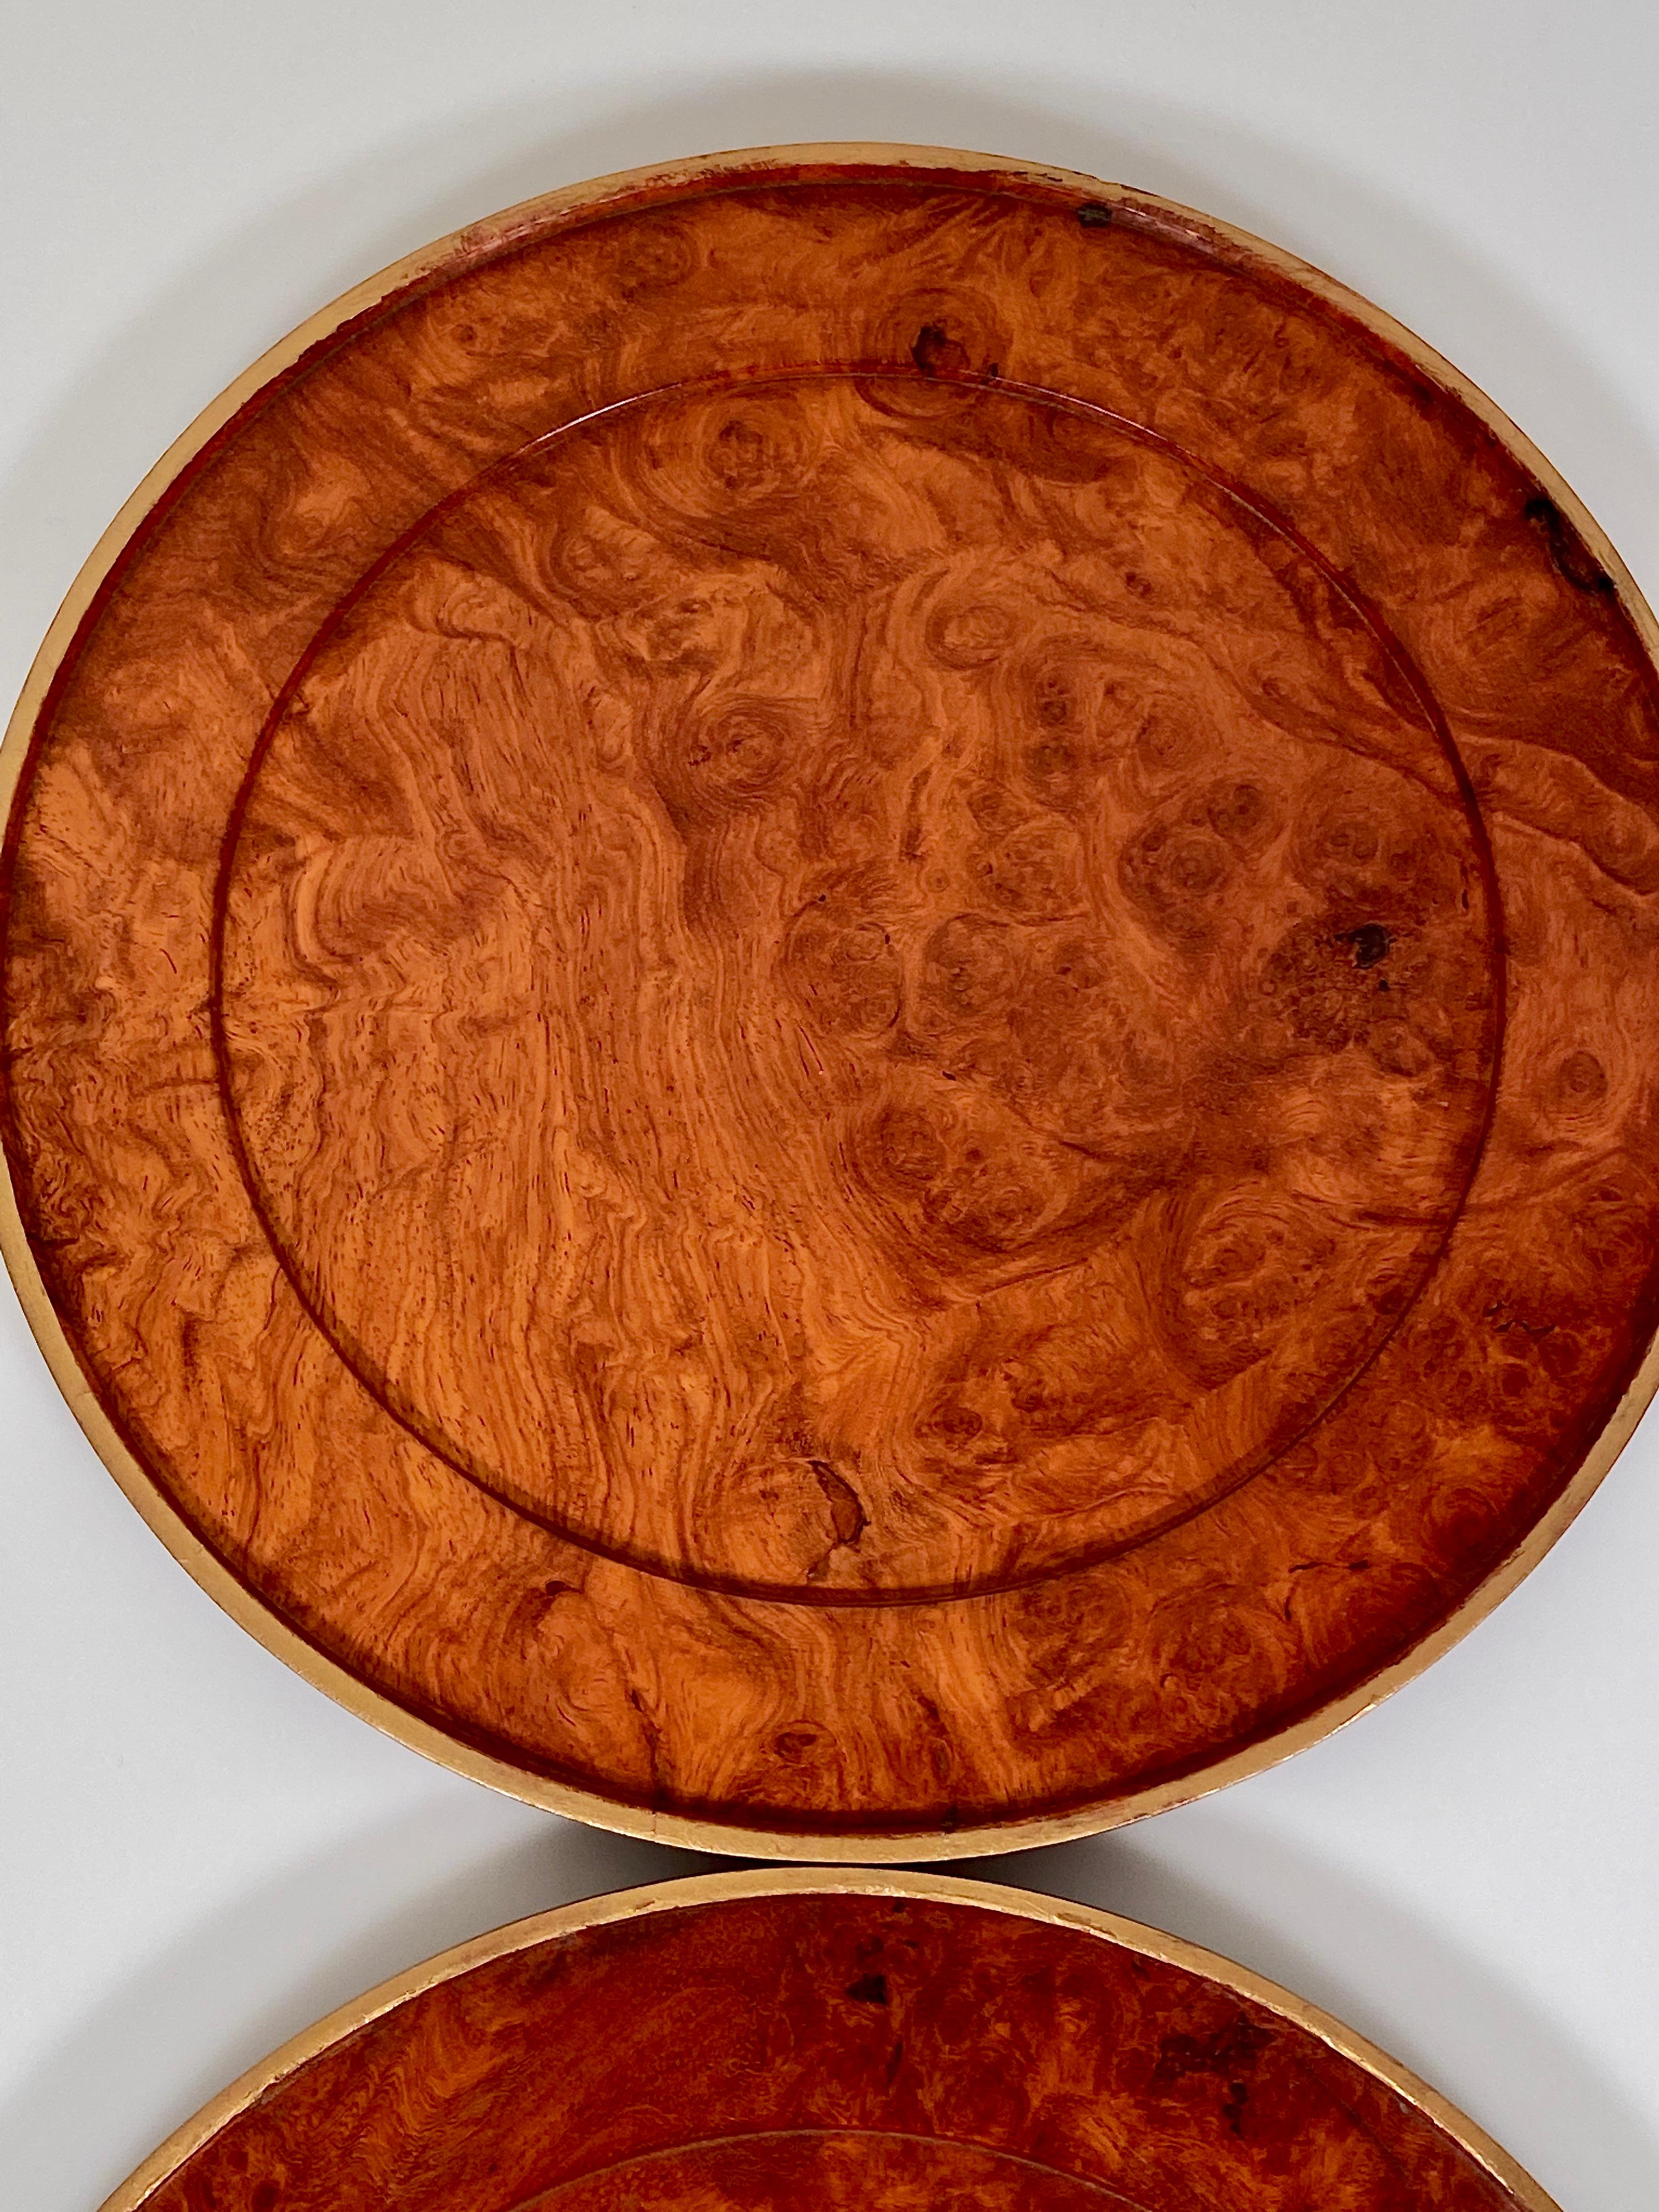 Charger Plates Burr Walnut PlaceMat Carved Wood Vintage Modernist 6